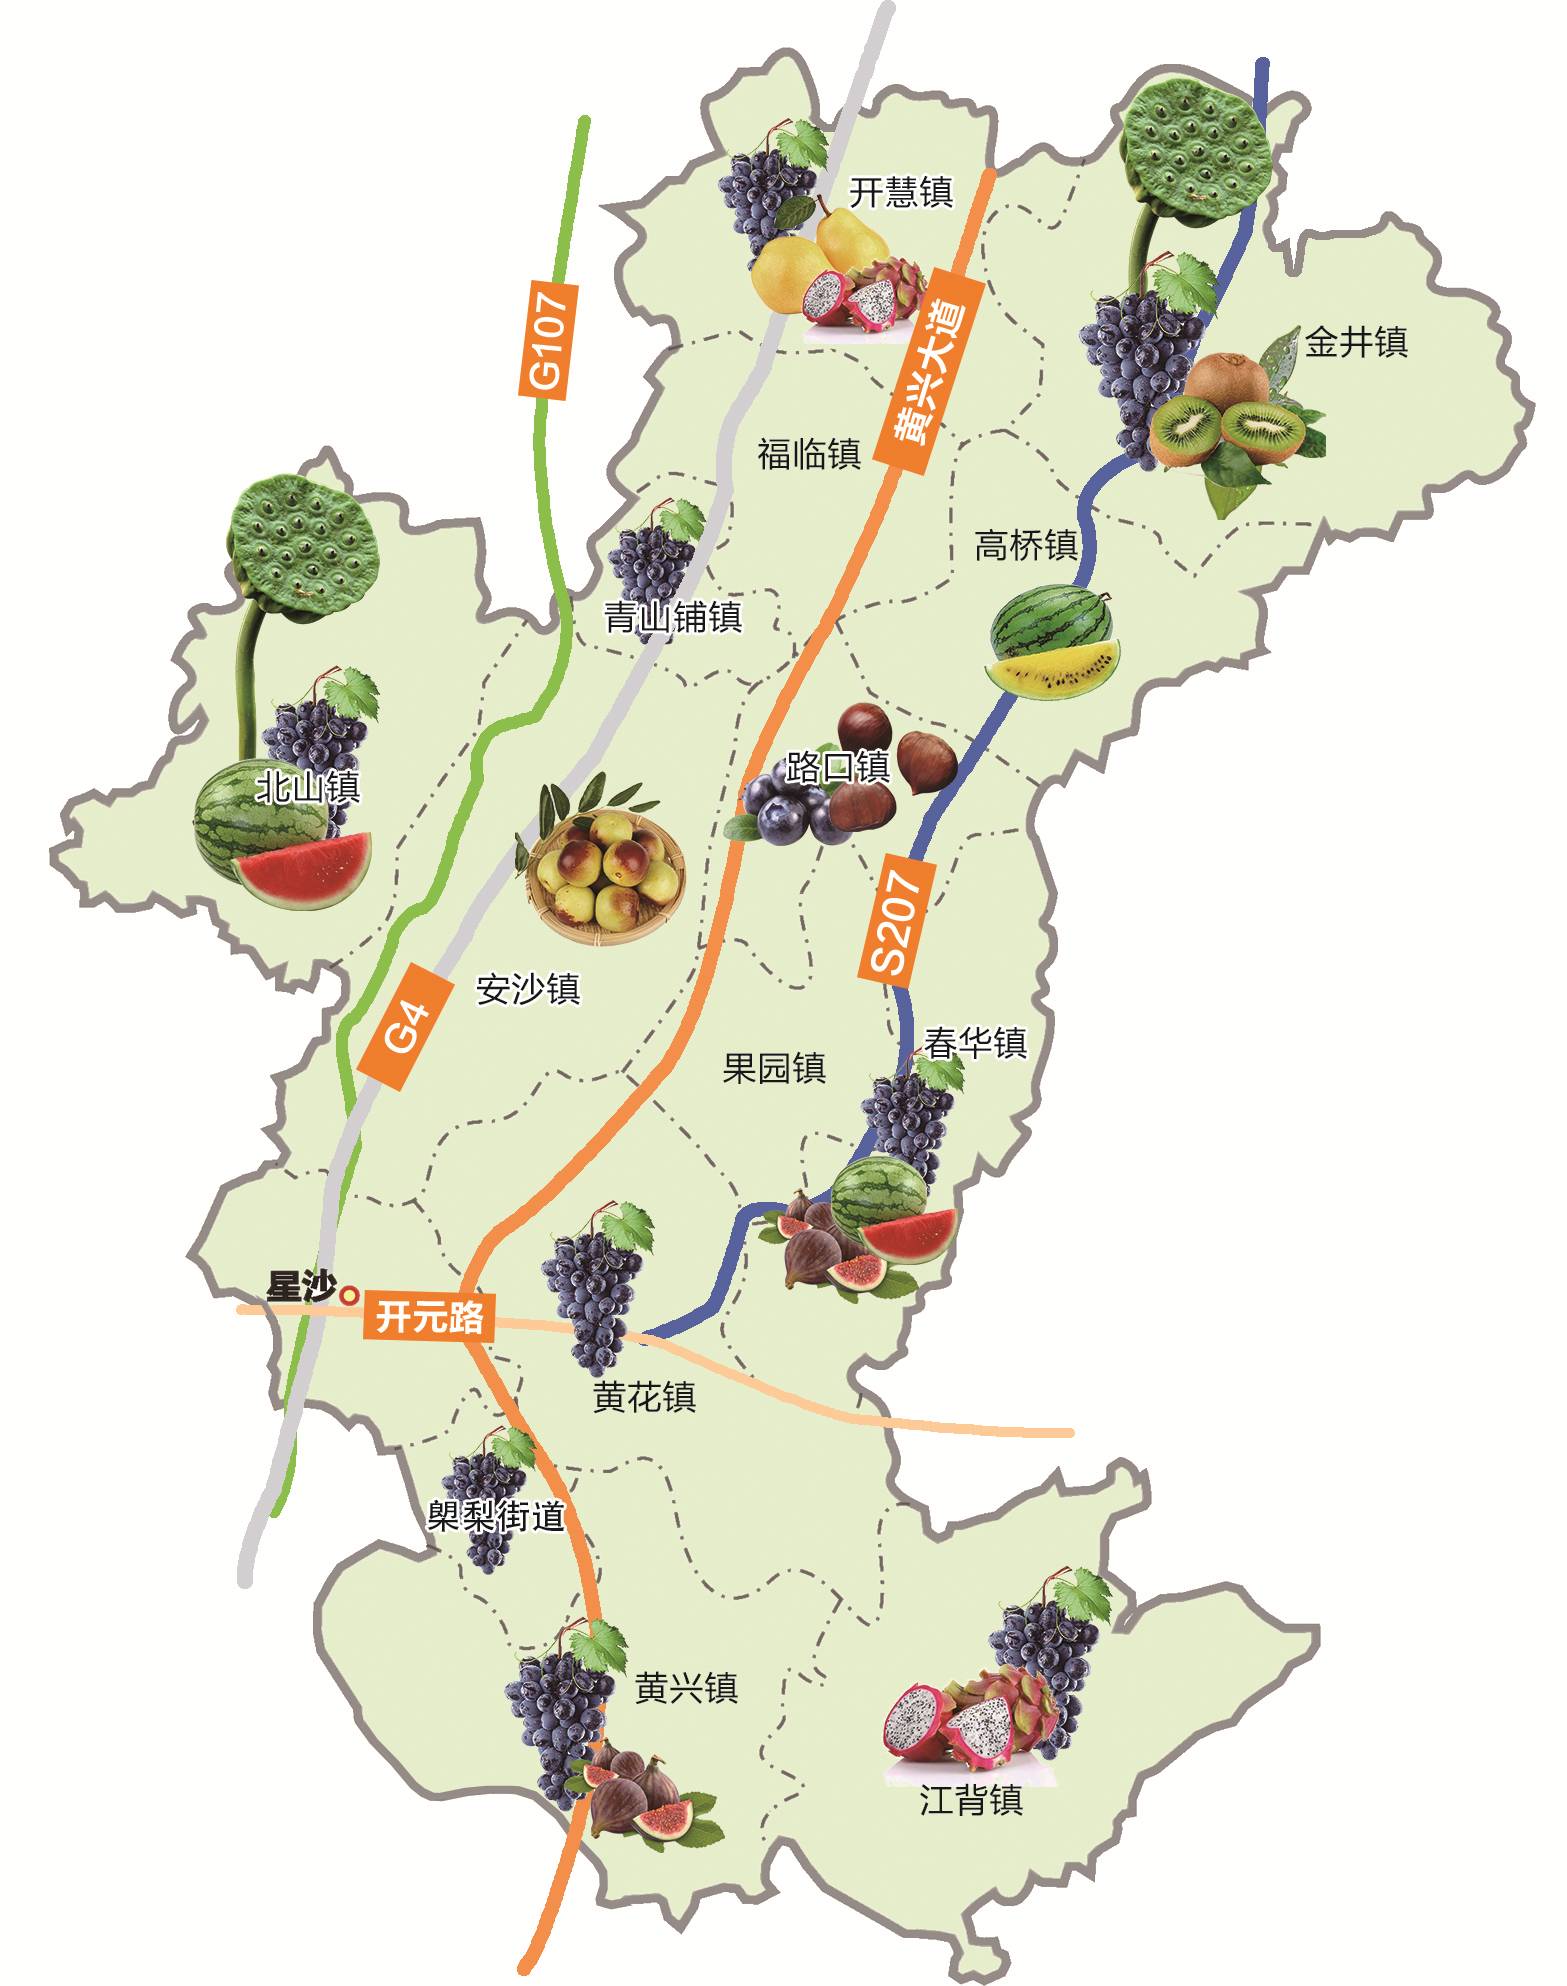 收好了!长沙县最新最全水果采摘地图出炉,再不来摘要等明年图片